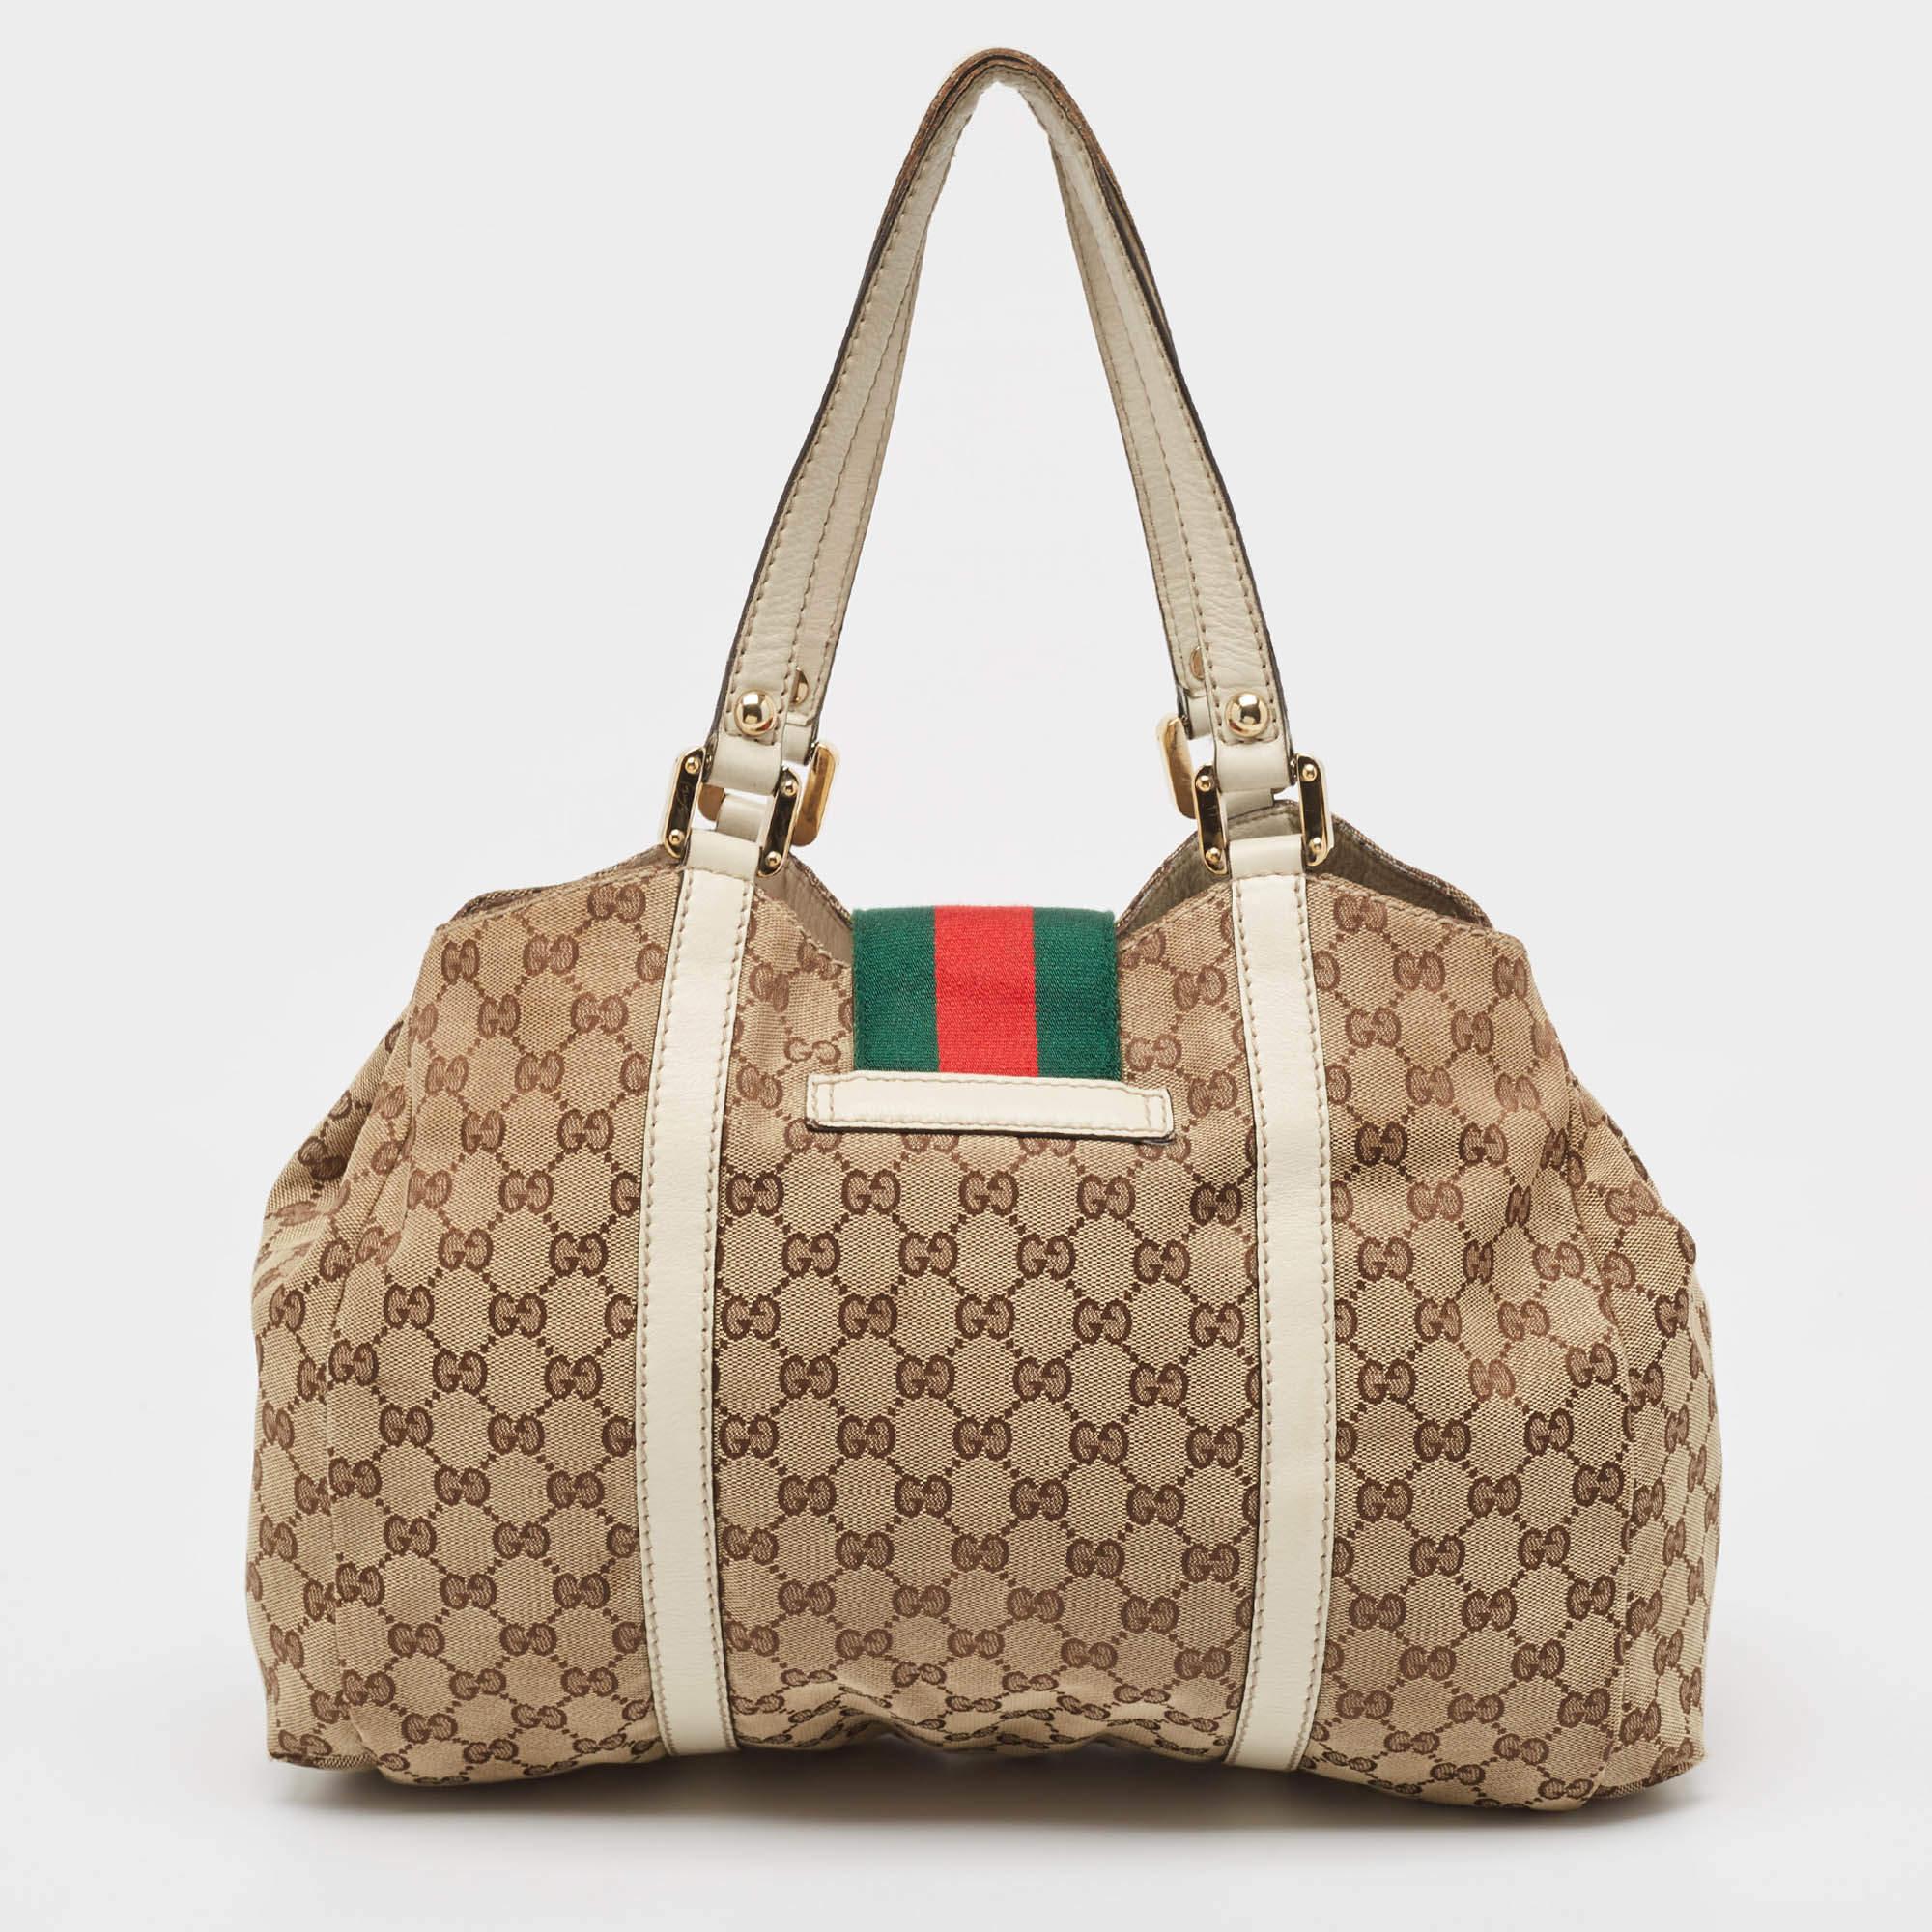 Durchdachte Details, hohe Qualität und Alltagstauglichkeit zeichnen diese Designertasche für Damen von Gucci aus. Die Tasche wird mit viel Geschick genäht, um einen raffinierten Look und eine tadellose Verarbeitung zu gewährleisten.

